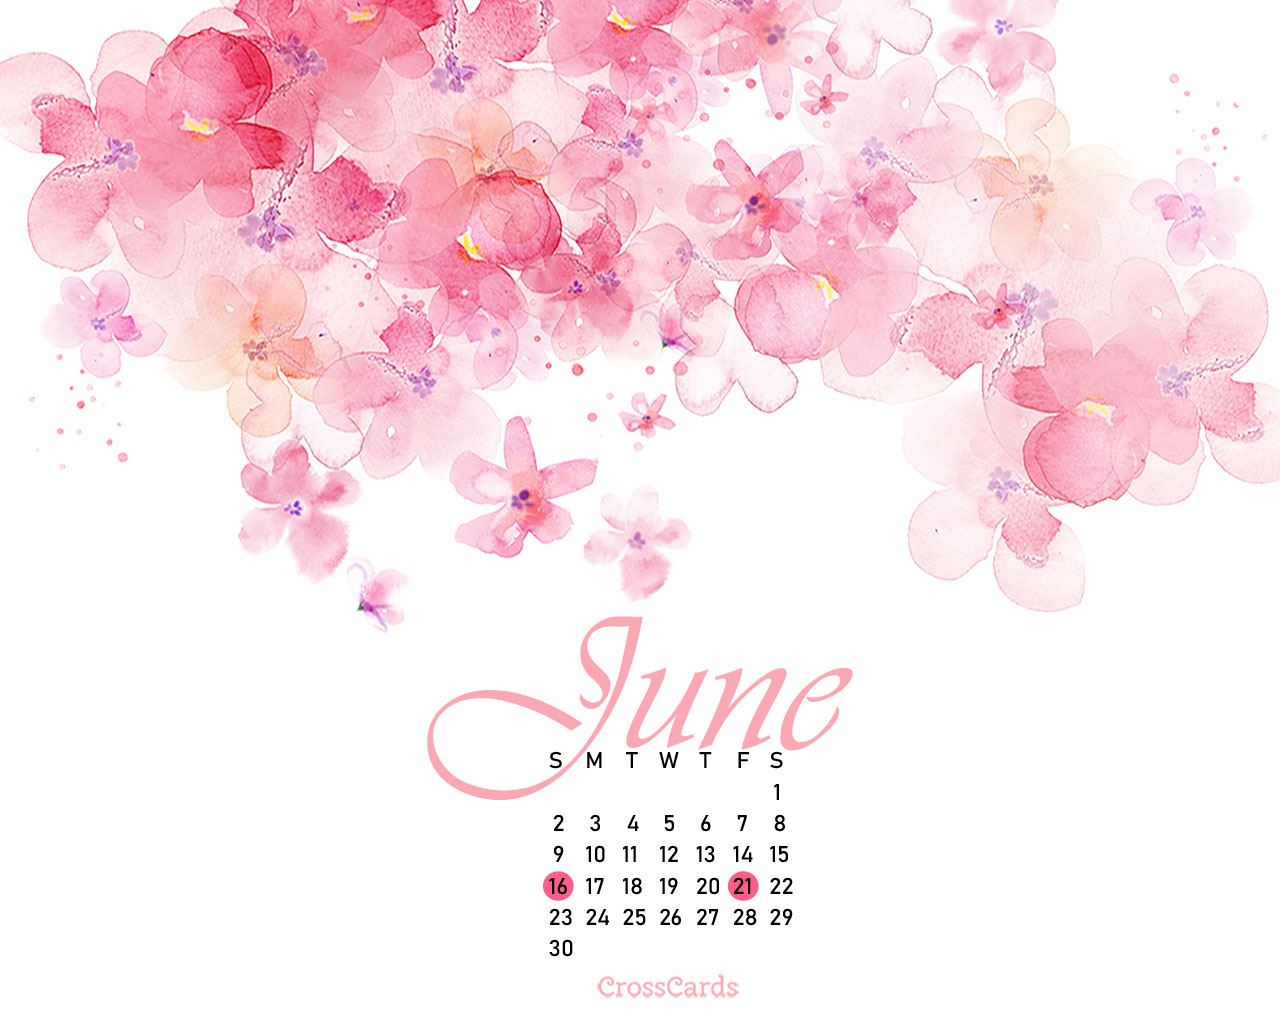 June 2019 Watercolors Desktop Calendar Free June Wallpaper